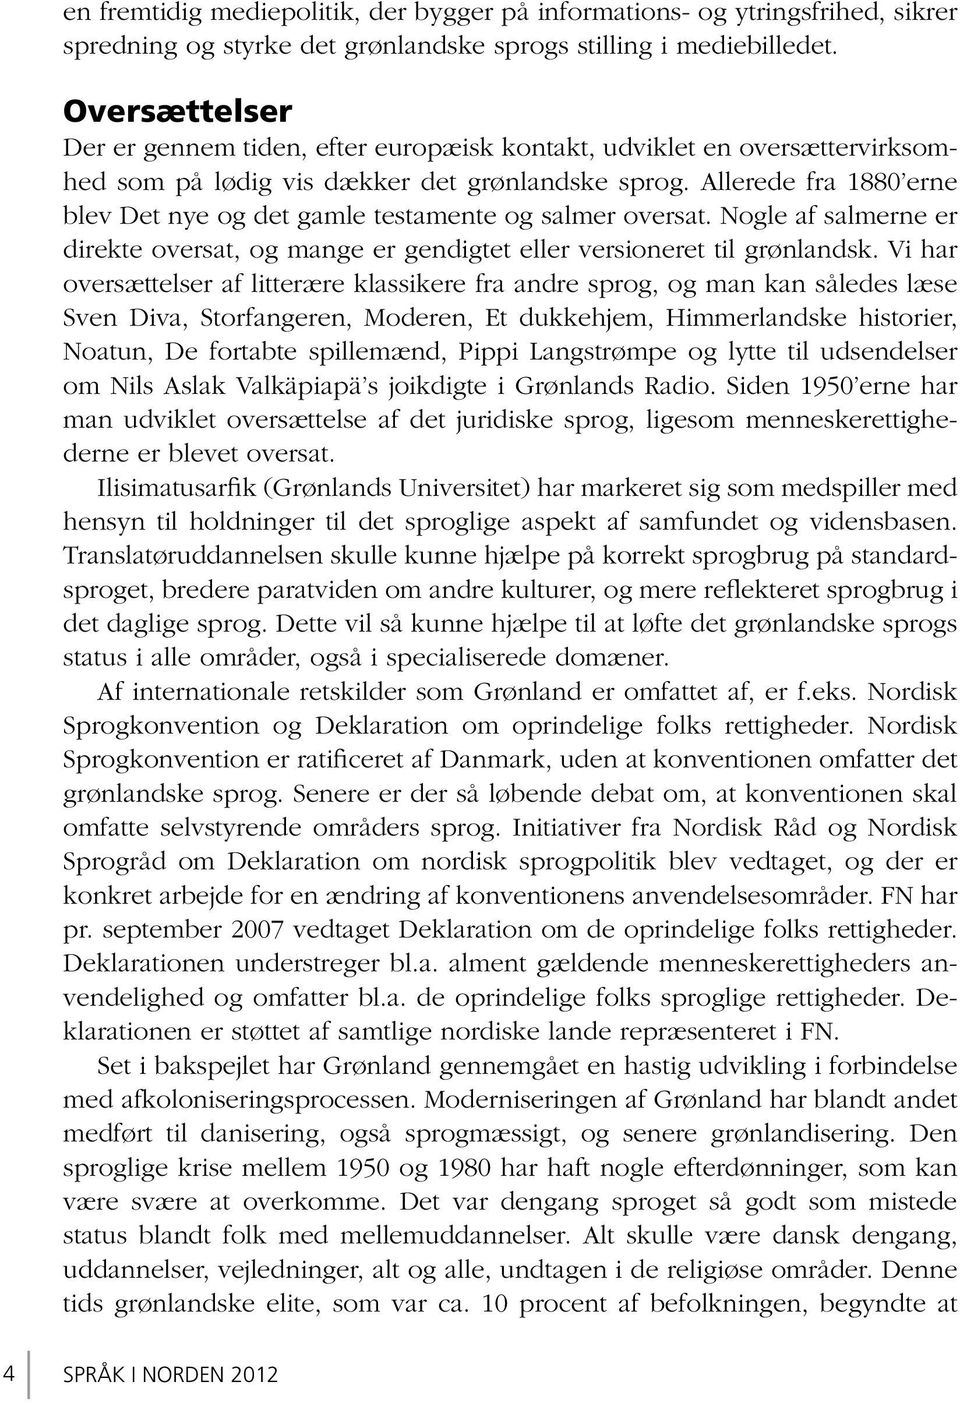 Allerede fra 1880 erne blev Det nye og det gamle testamente og salmer oversat. Nogle af salmerne er direkte oversat, og mange er gendigtet eller versioneret til grønlandsk.